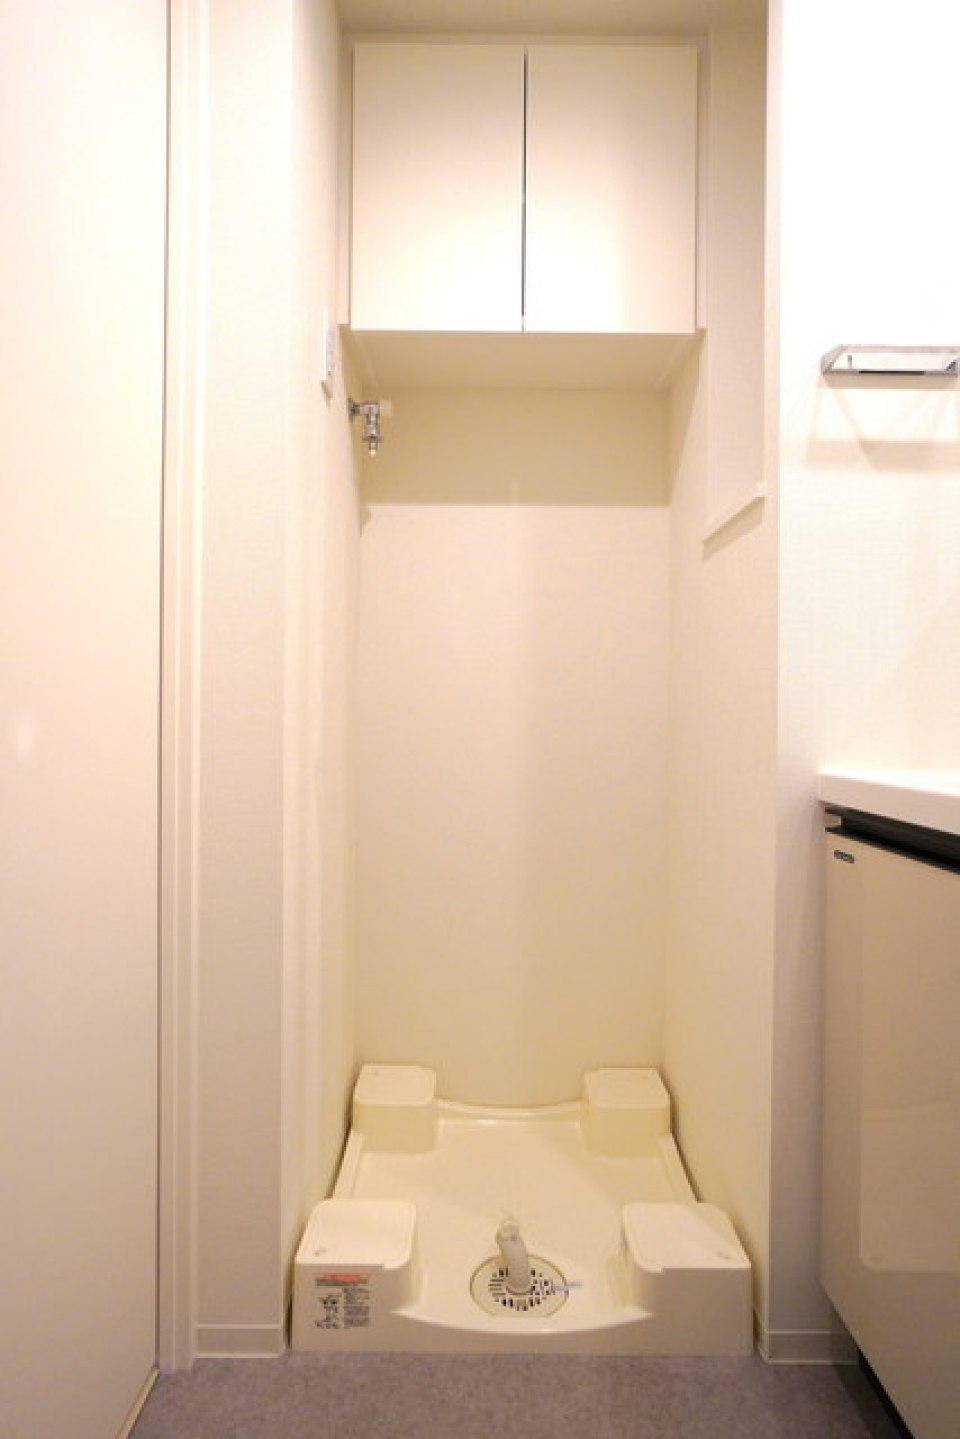 室内洗濯機置き場の上は棚があるので、収納も便利に♩
※写真は同タイプ住戸です。